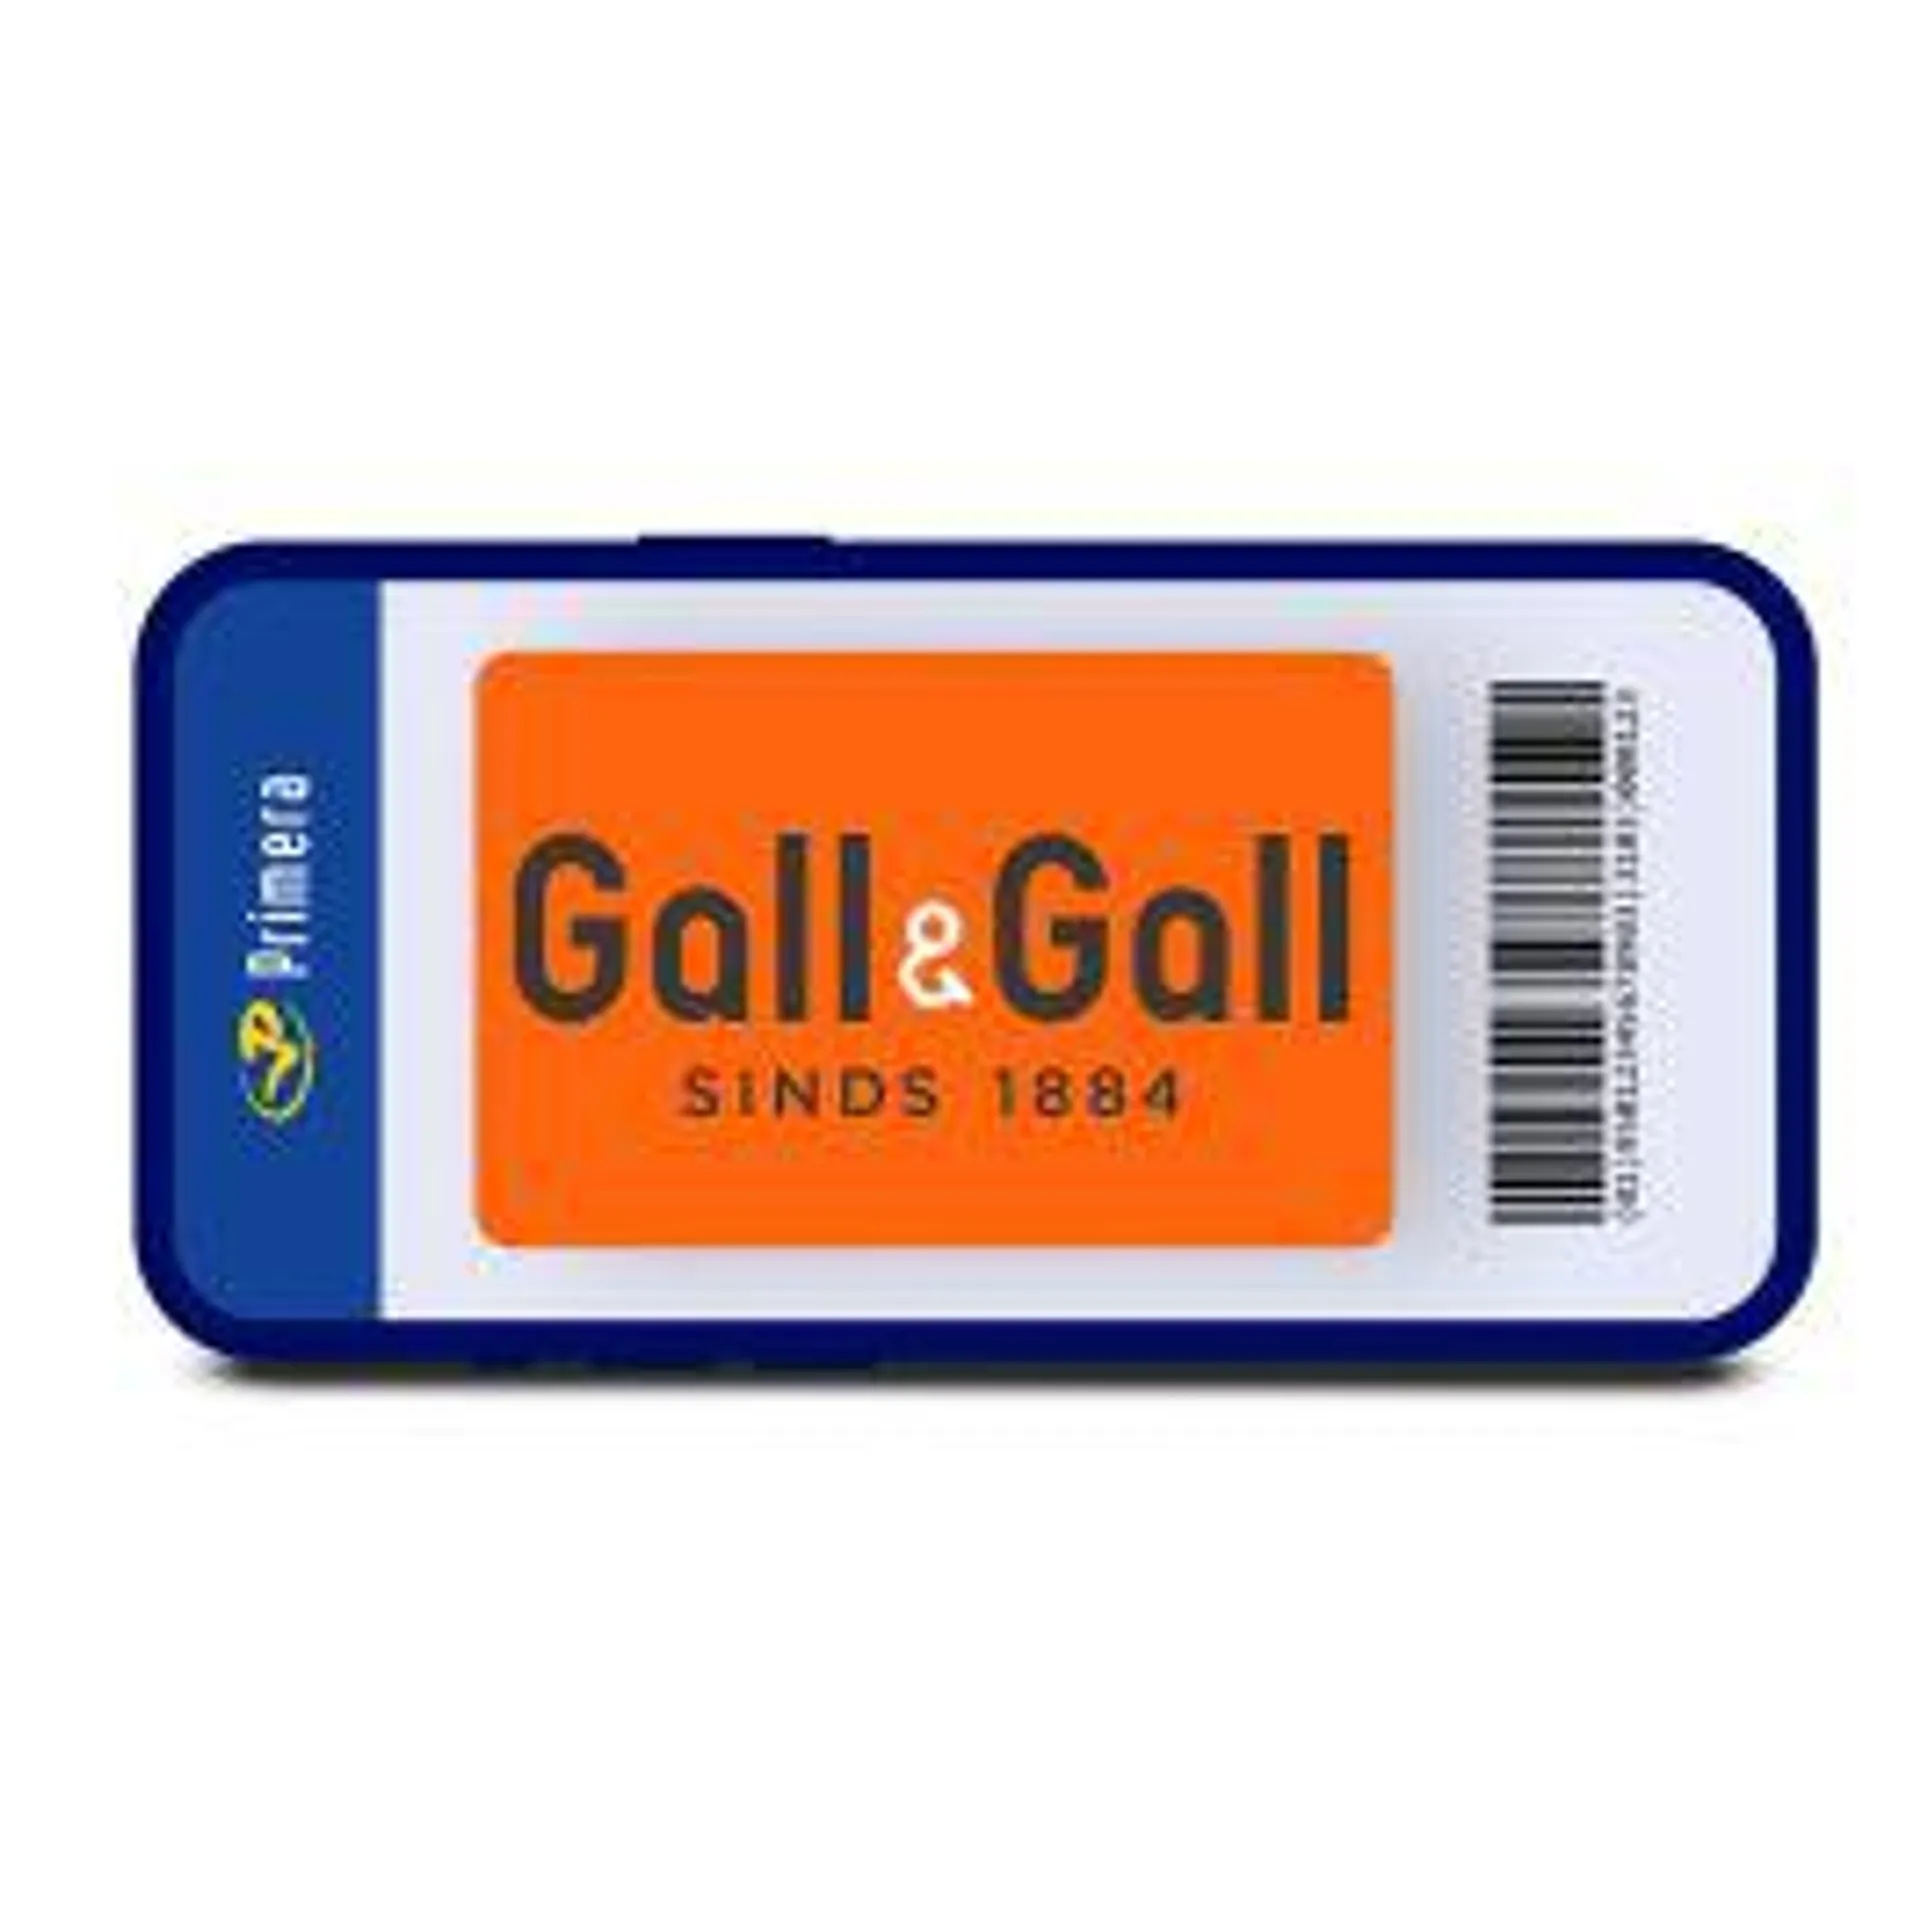 Gall & Gall digitale cadeaukaart